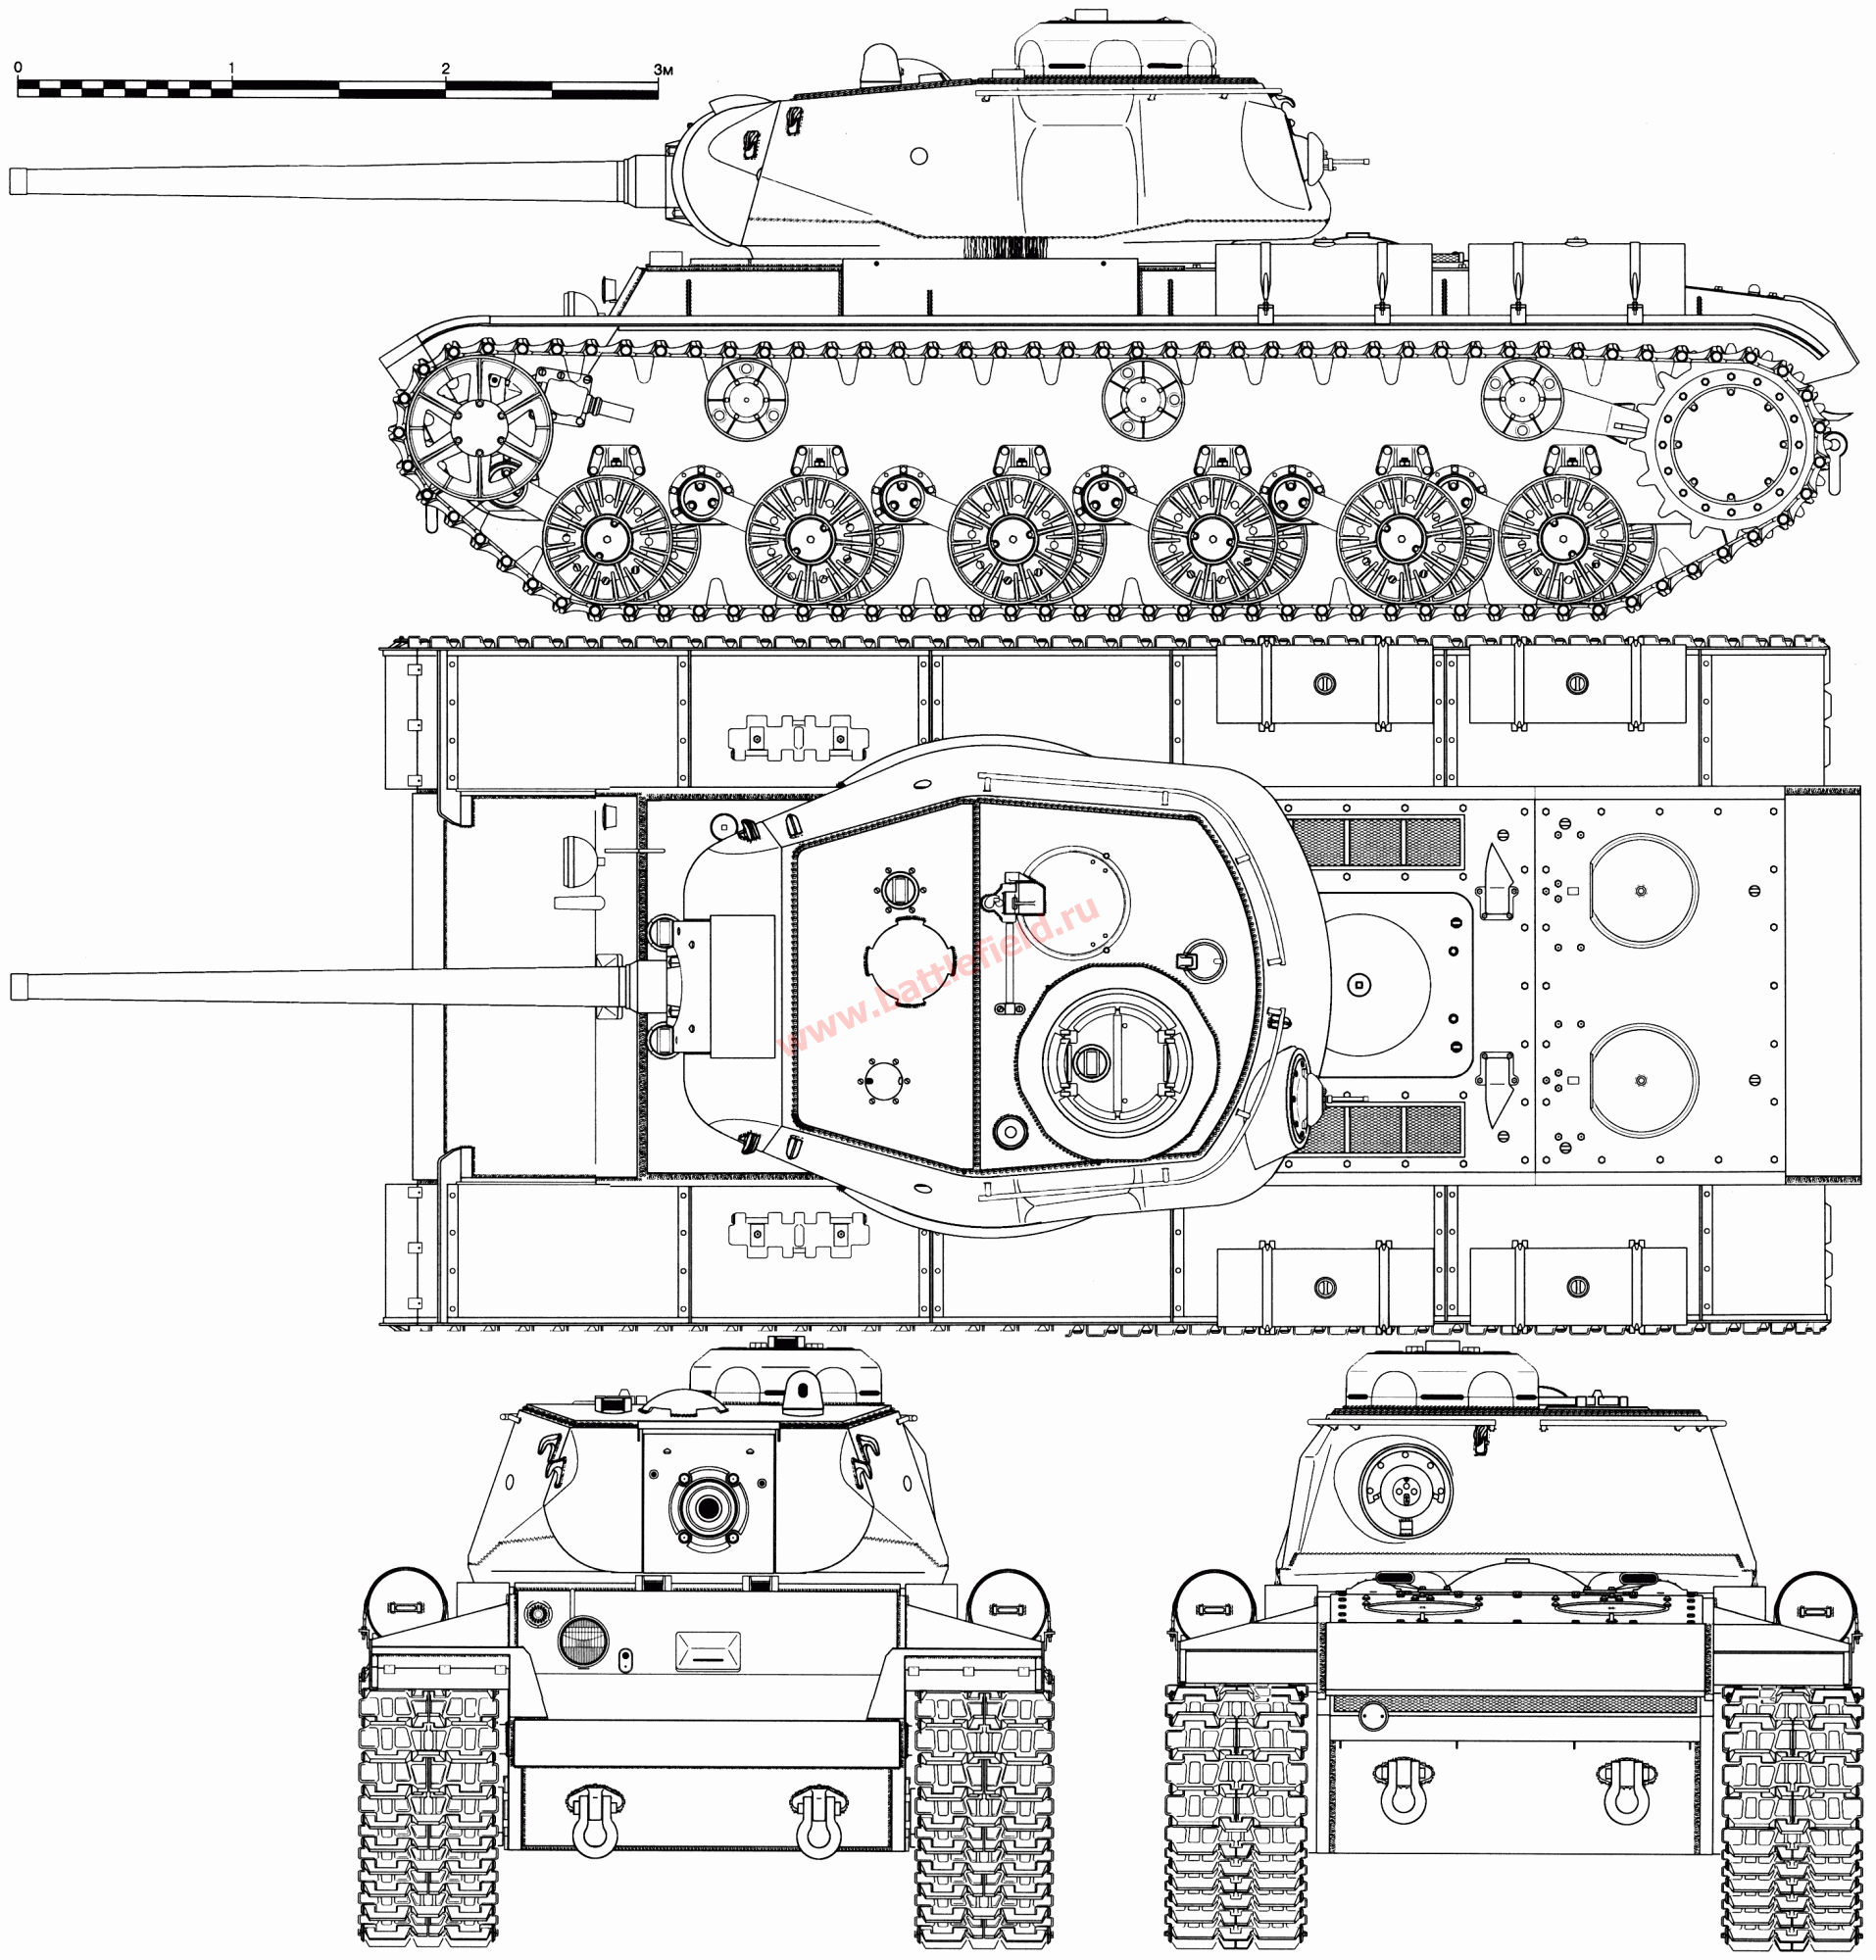 KV-85 Heavy Tank